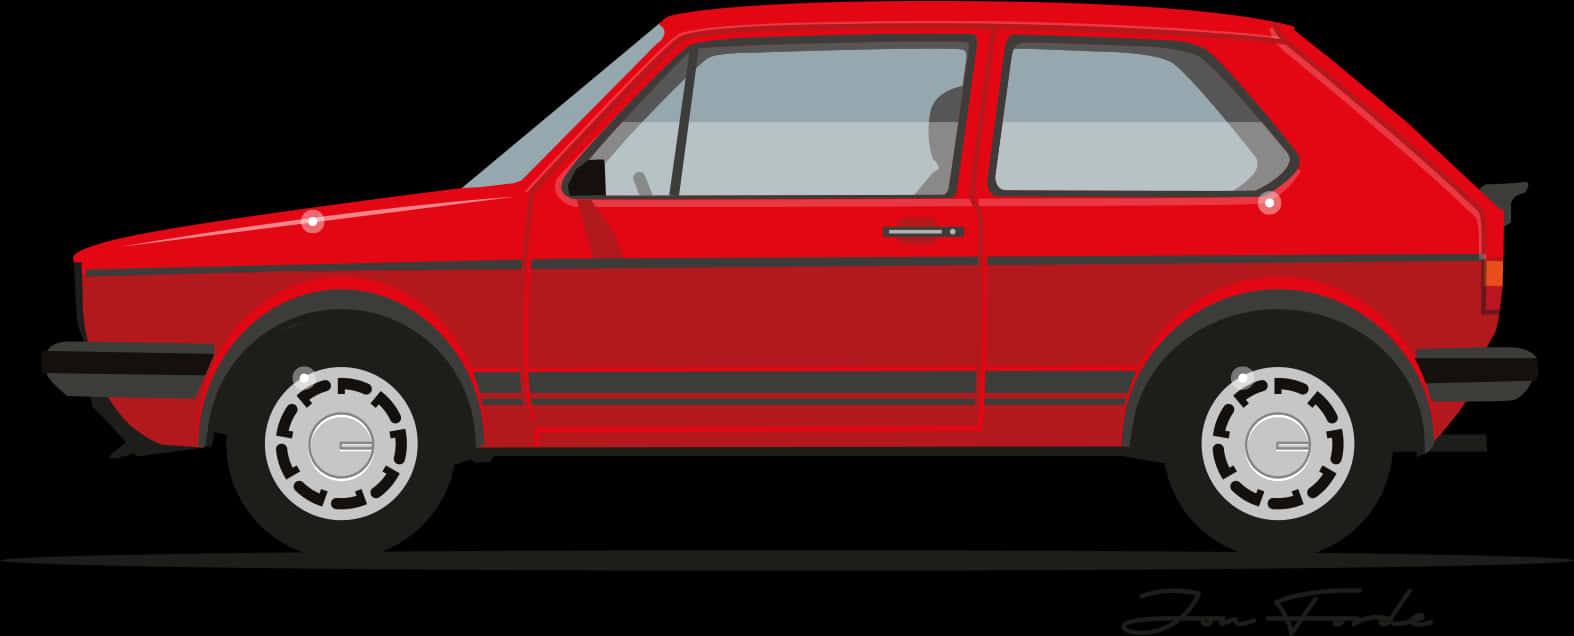 Red Hatchback Car Side View